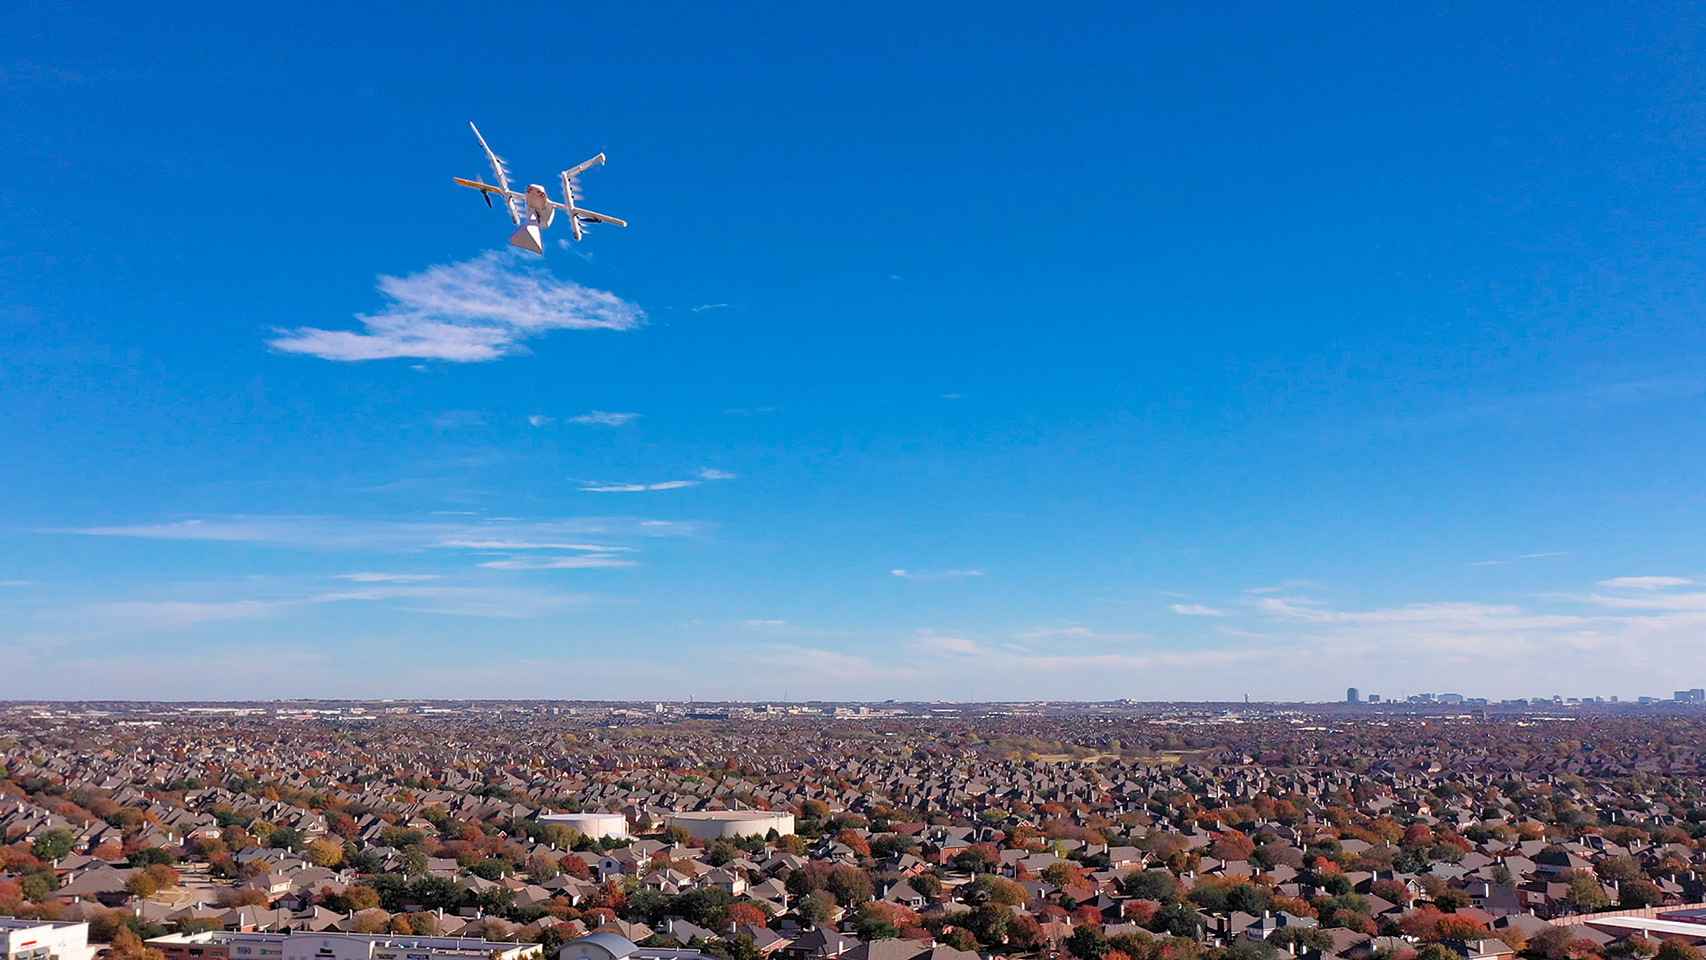 Wing por Google comenzará pronto a volar con sus drones para repartir pedidos